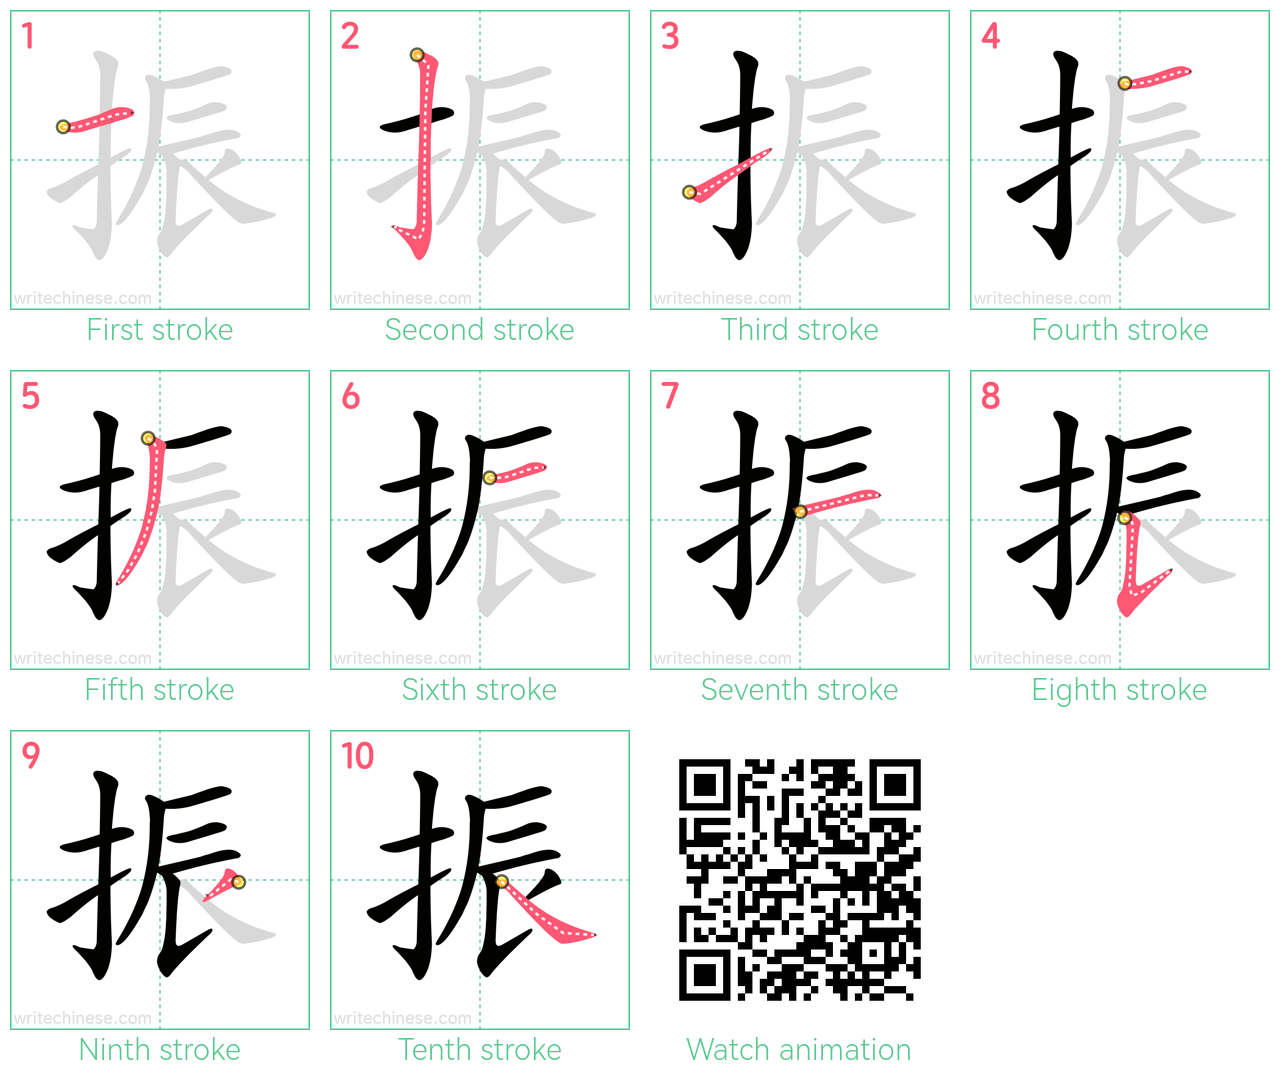 振 step-by-step stroke order diagrams